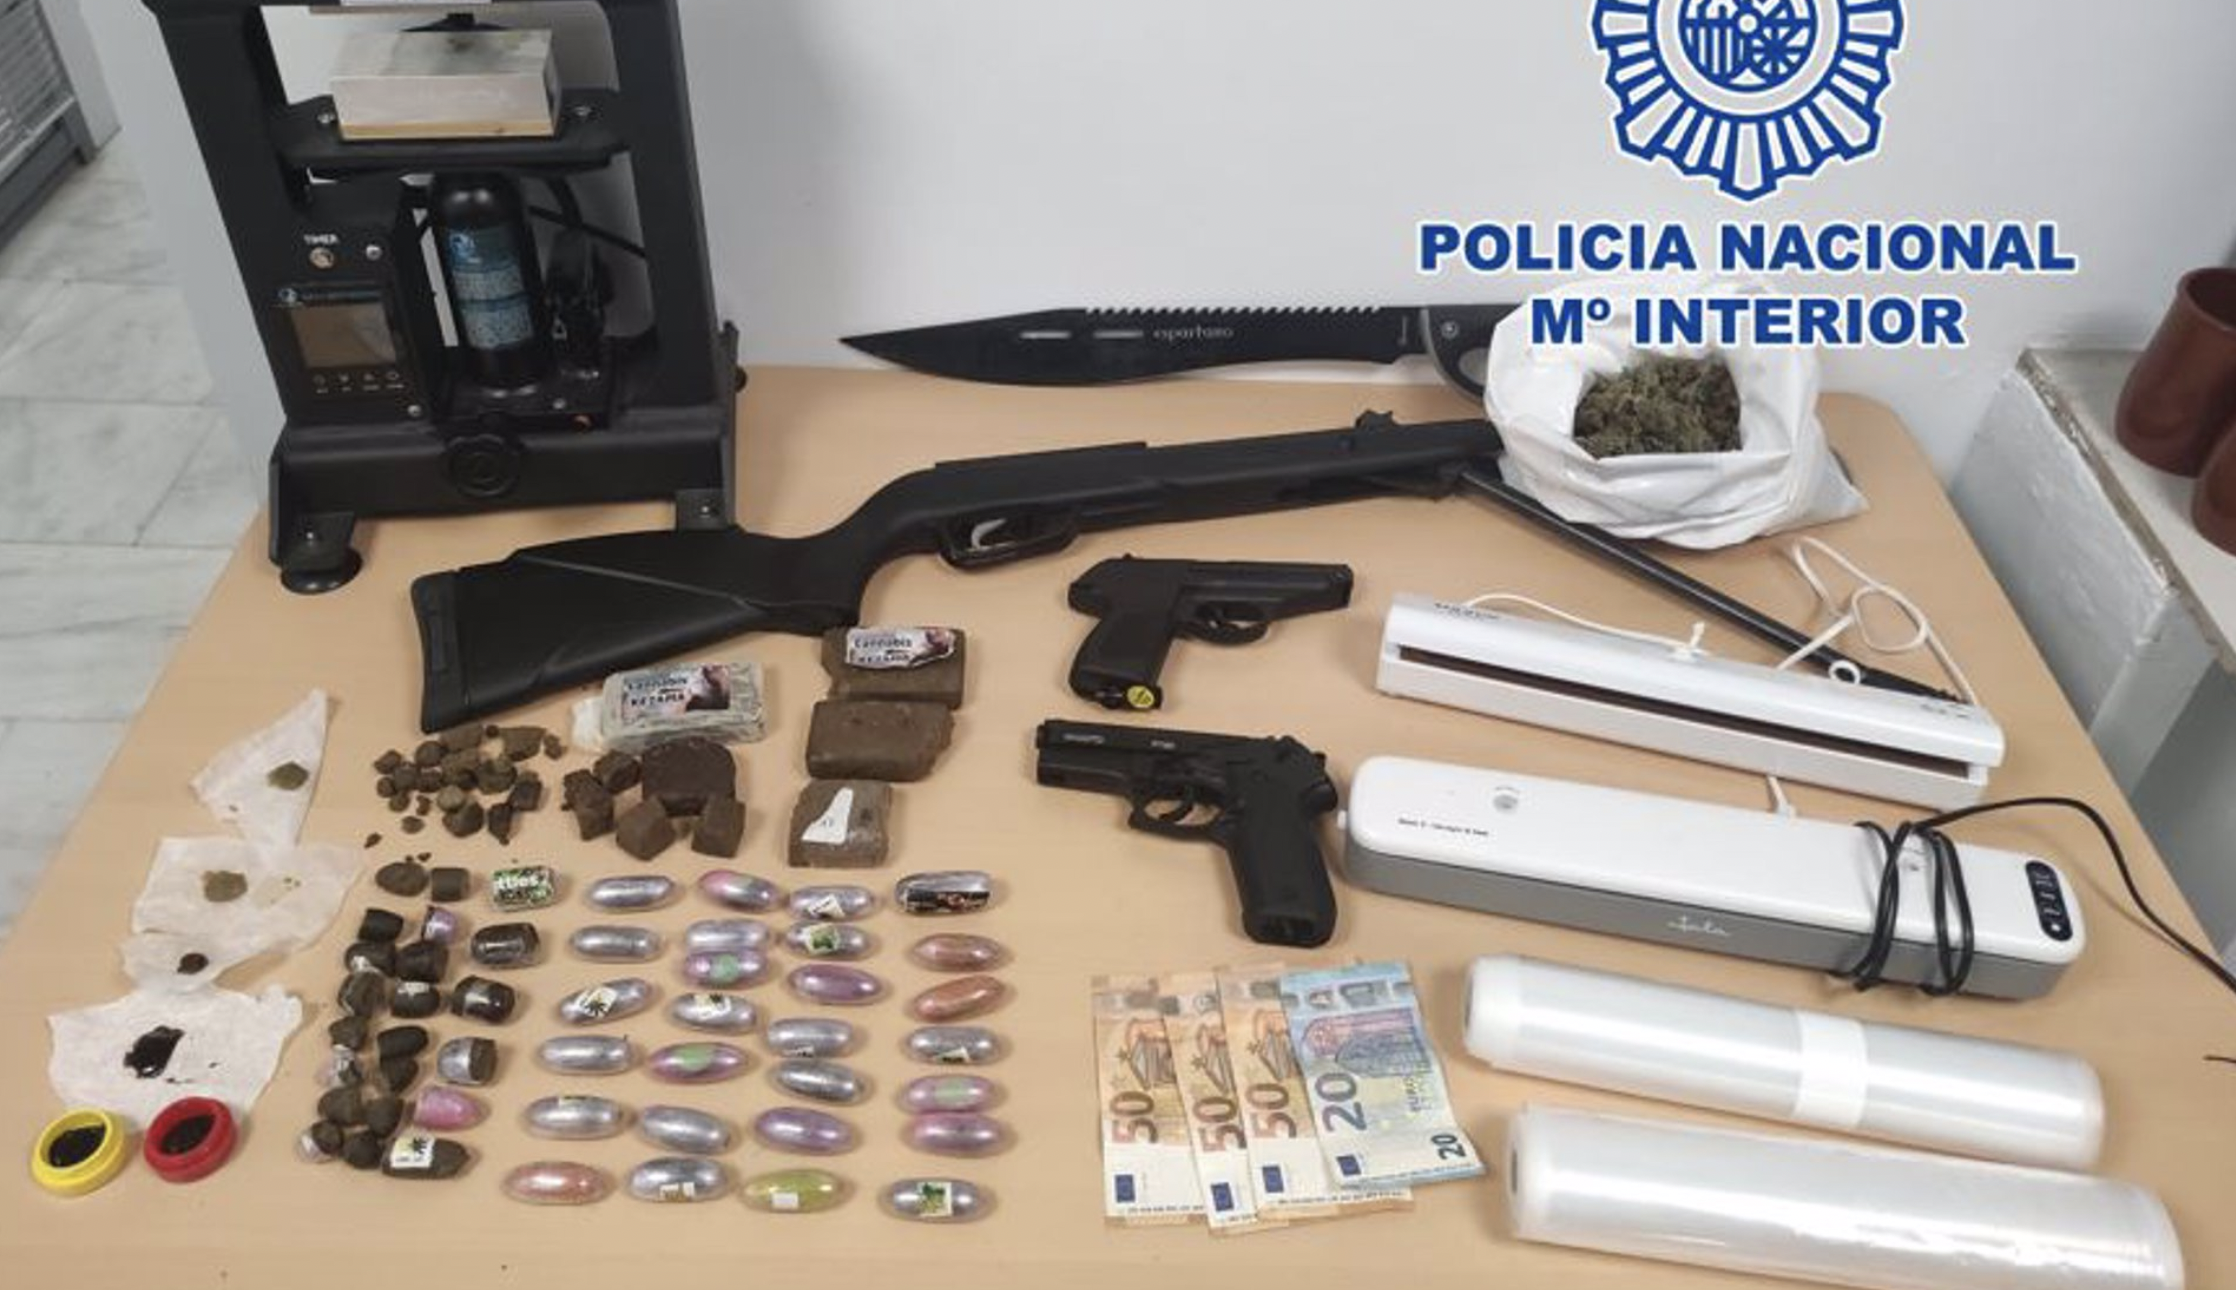 Imagen de algunos objetos intervenidos por la Policía Nacional en un cortijo de Granada.